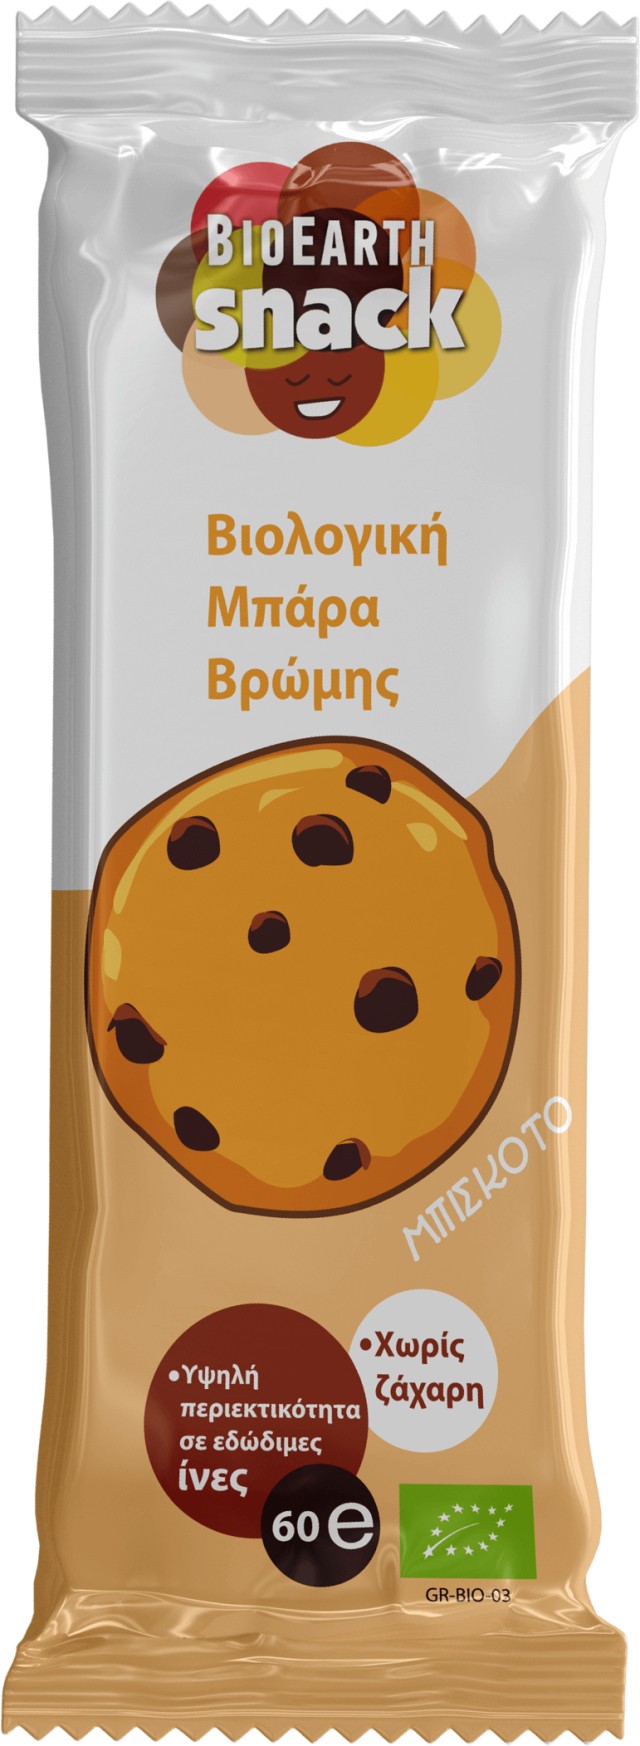 Bioearth Snack Choco Cookies Μπάρα Βρώμης Κακάο-Μπισκότο & Μέλι, 60g